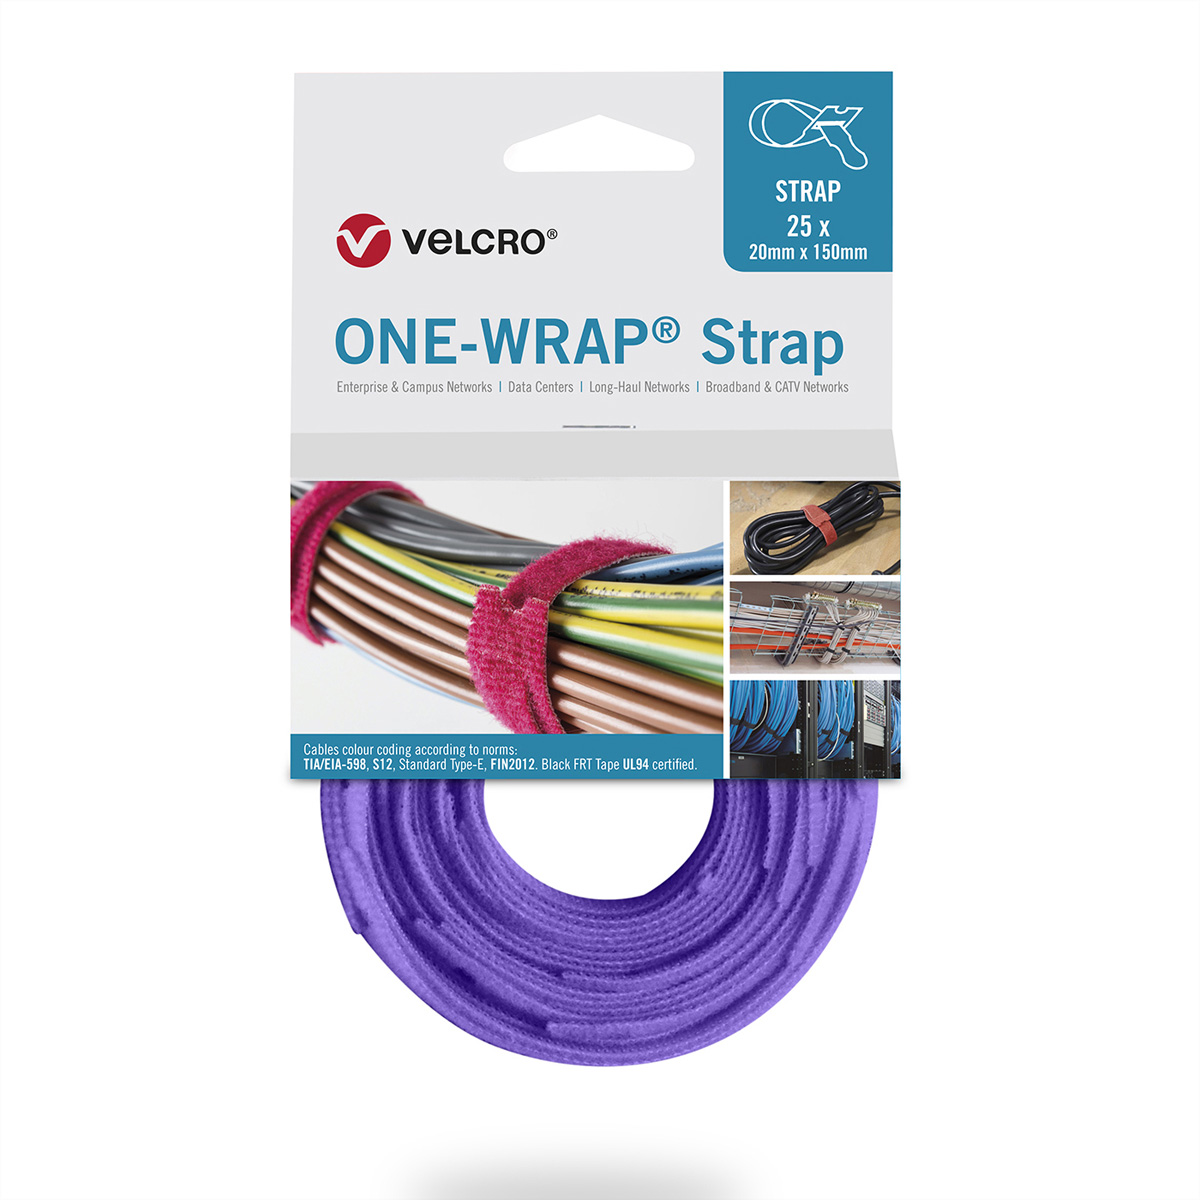 VELCRO One Wrap Violett - Klettband 20x150mm, 25 Stück - Artikelnummer VEL-OW64407